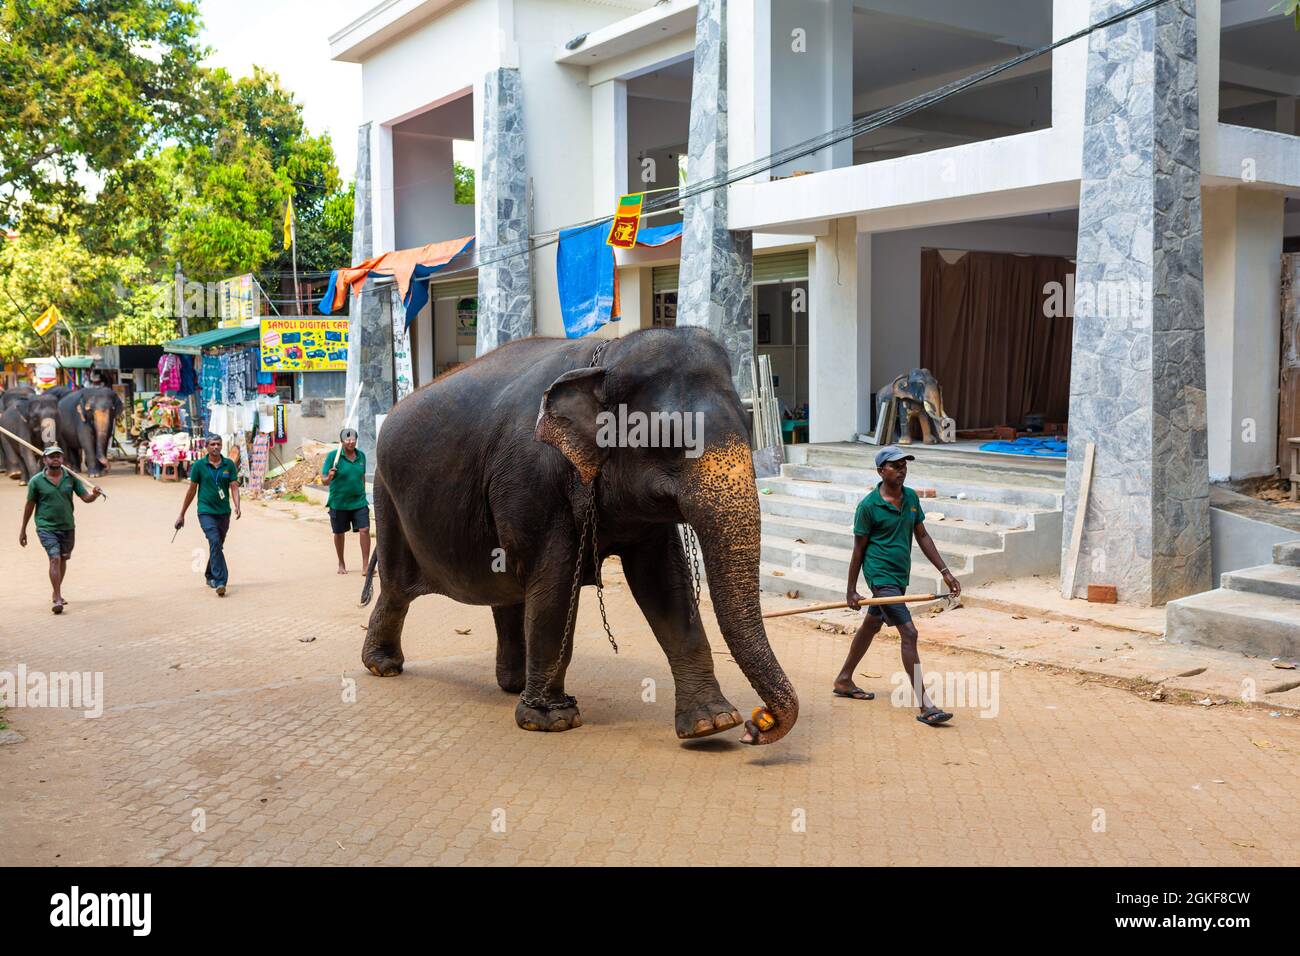 Un troupeau d'éléphants est conduit dans une rue de la ville après avoir nagé dans la rivière. Orphelinat d'éléphants au Sri Lanka. Colombo, Sri lanka - 02.06.2018 Banque D'Images